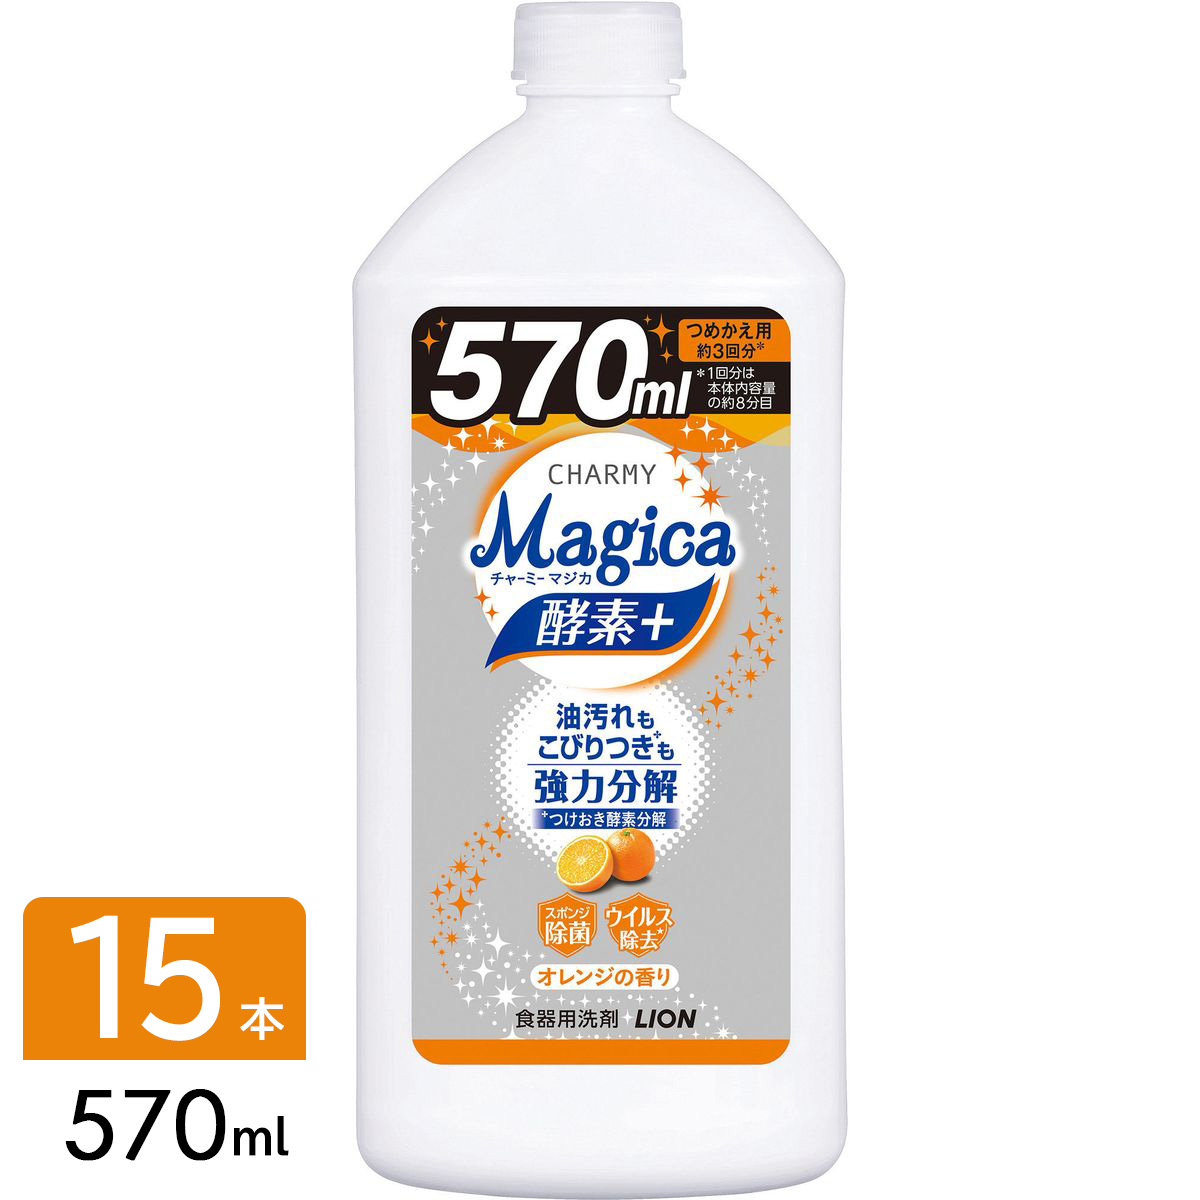 CHARMY チャーミー Magica マジカ 酵素+ フルーティオレンジ 食器用洗剤 詰め替え 570ml×15本